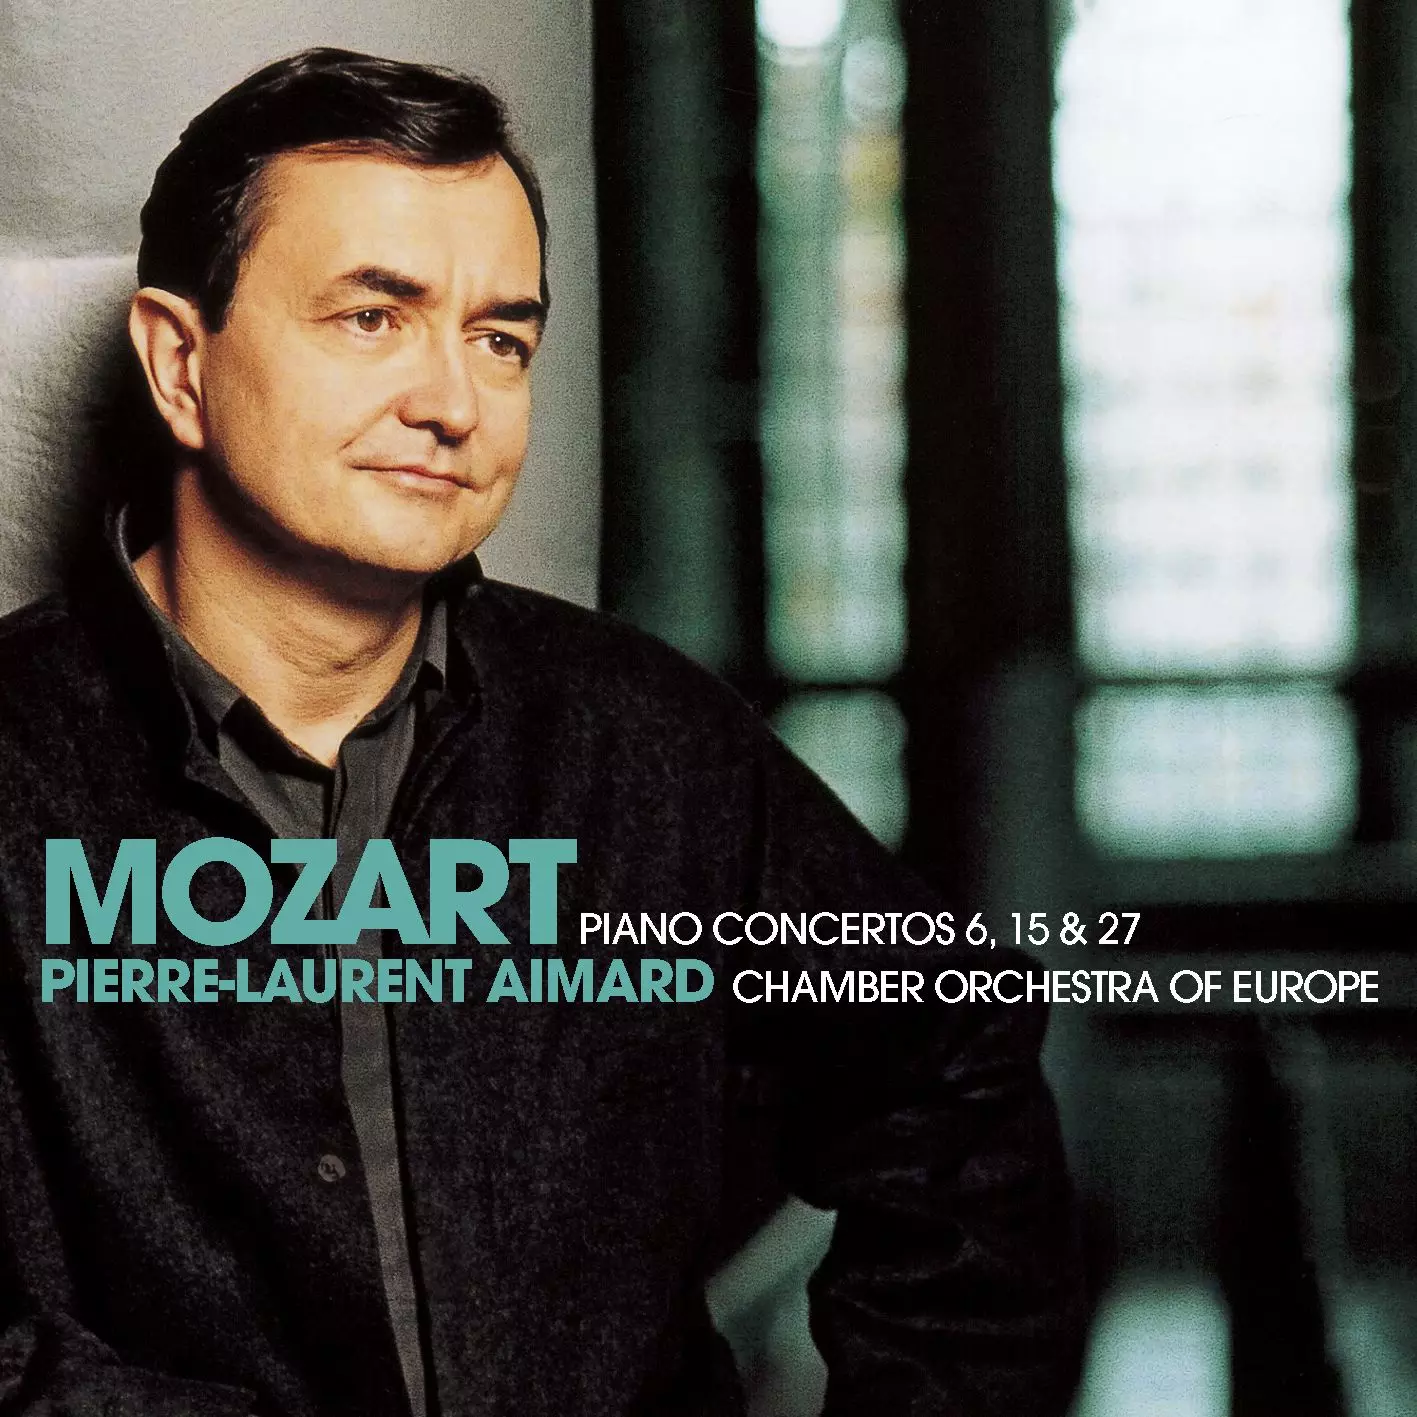 Mozart: Piano Concertos Nos 6, 15 & 27